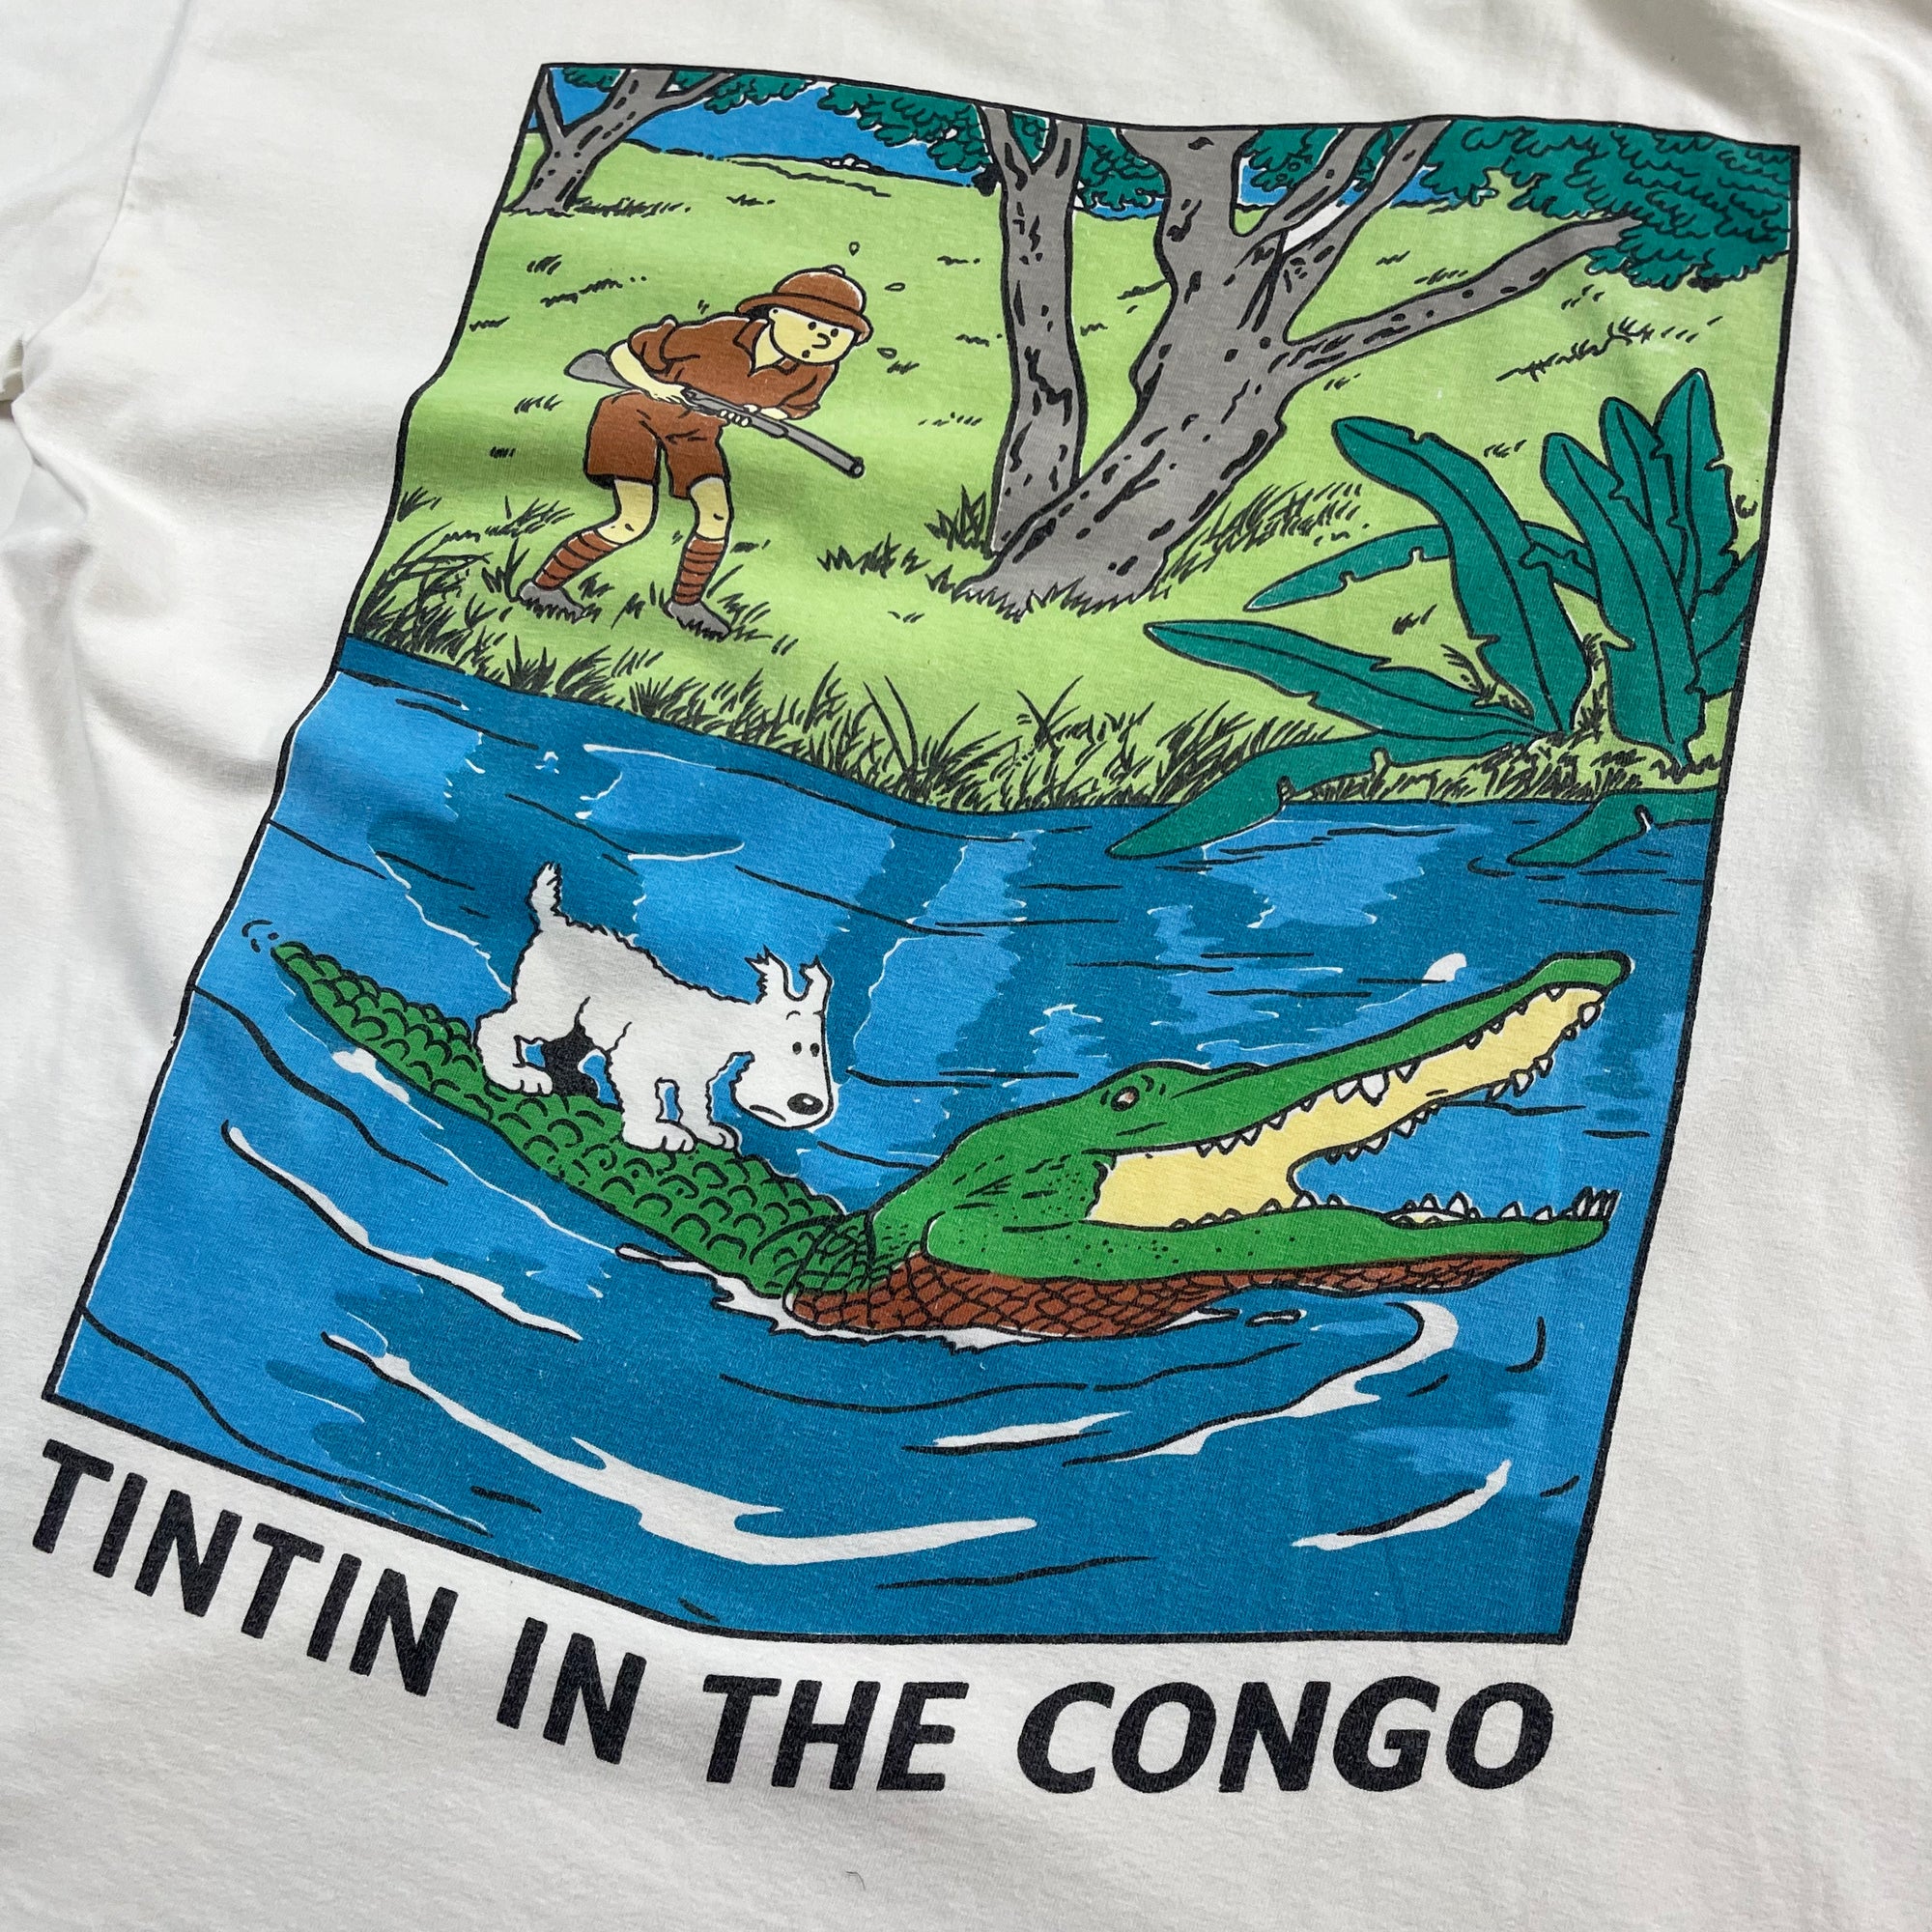 T-shirt - Tintin - Blanc